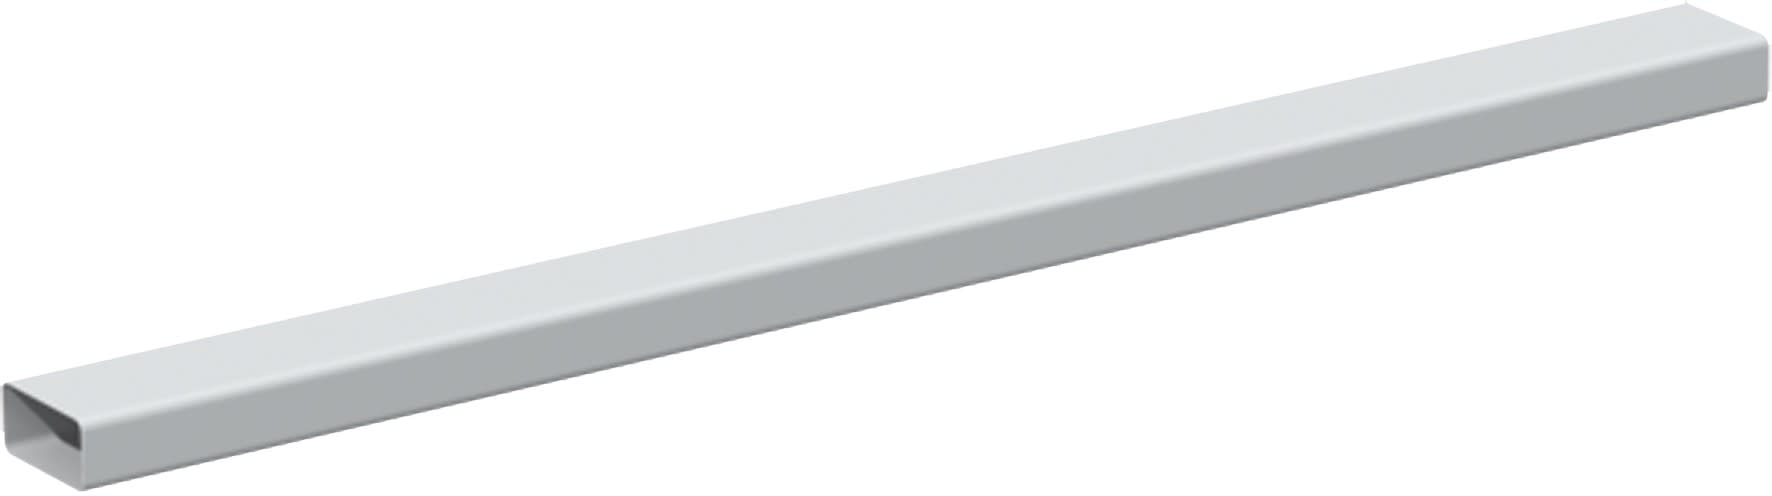 S&P - Conduit rectangulaire PVC rigide 55 x 110 mm, longueur 3 m, gamme TUBPLA